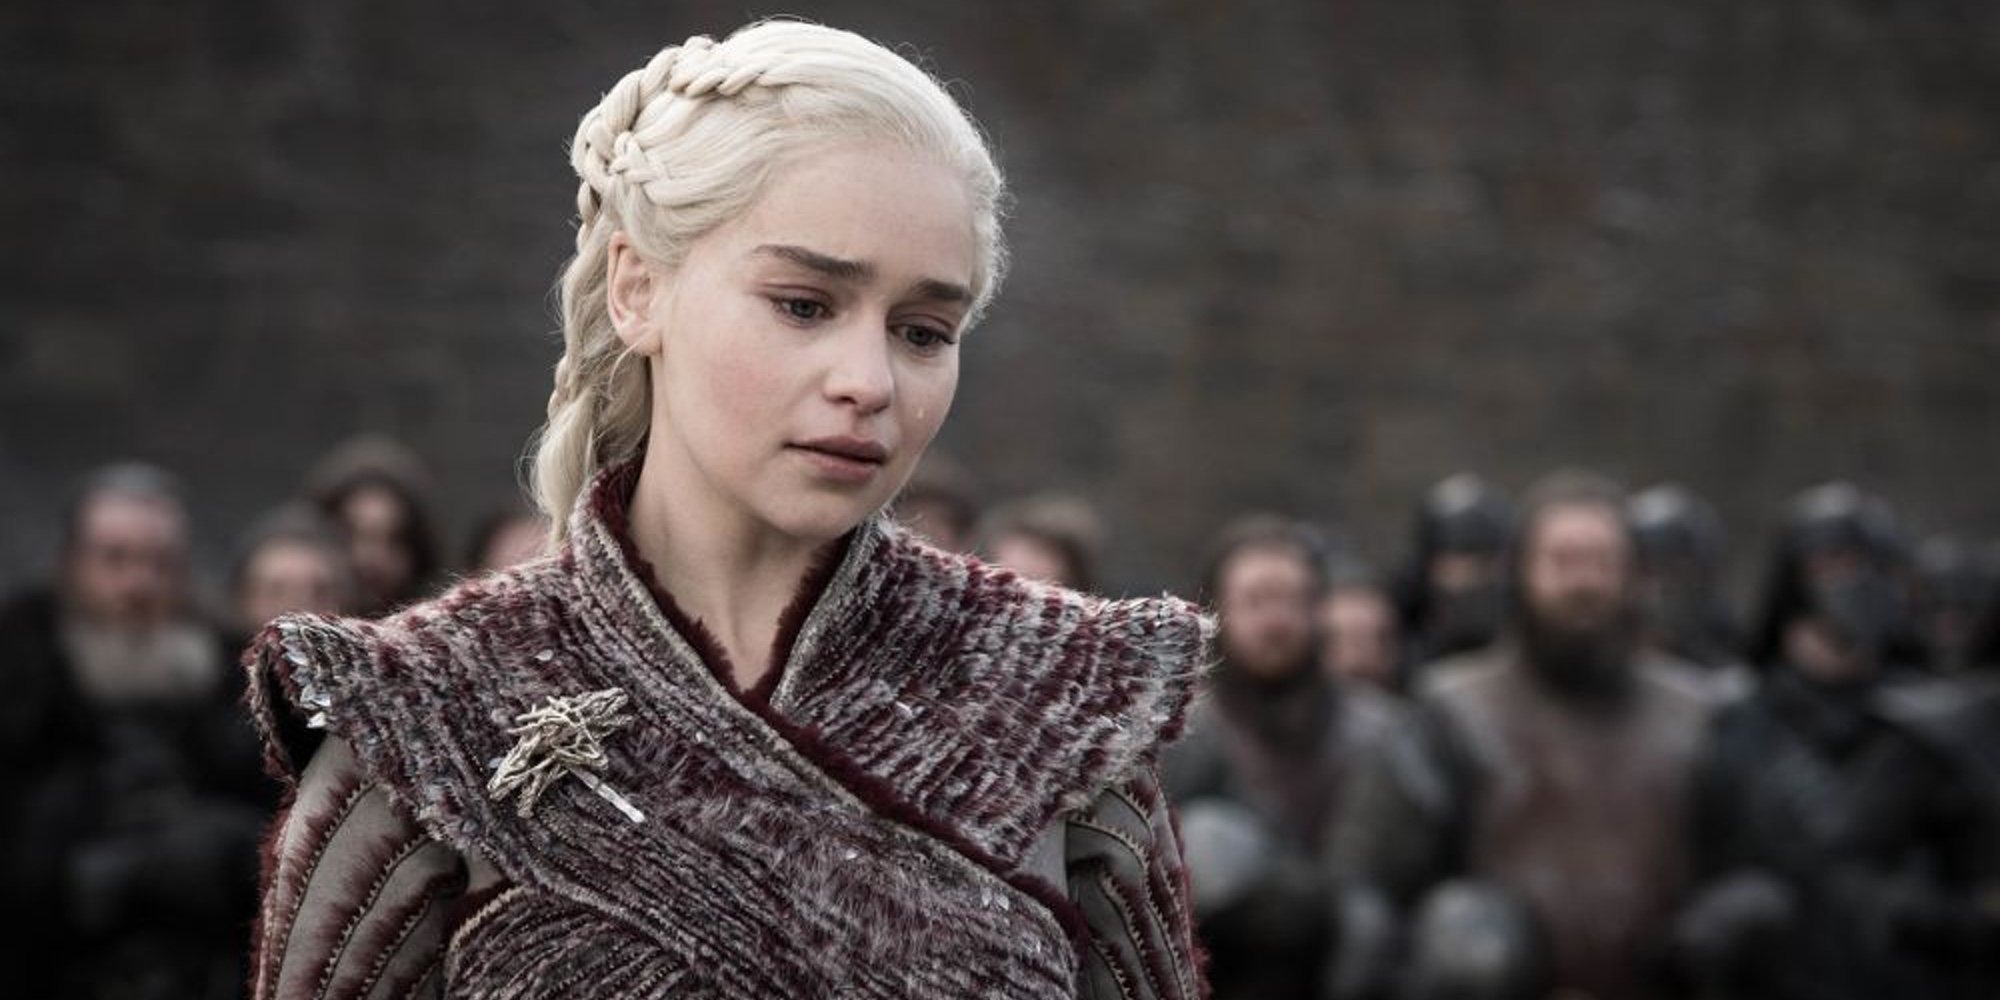 La emotiva despedida de Emilia Clarke por el final de 'Juego de Tronos': "He sudado en el fuego del dragón"